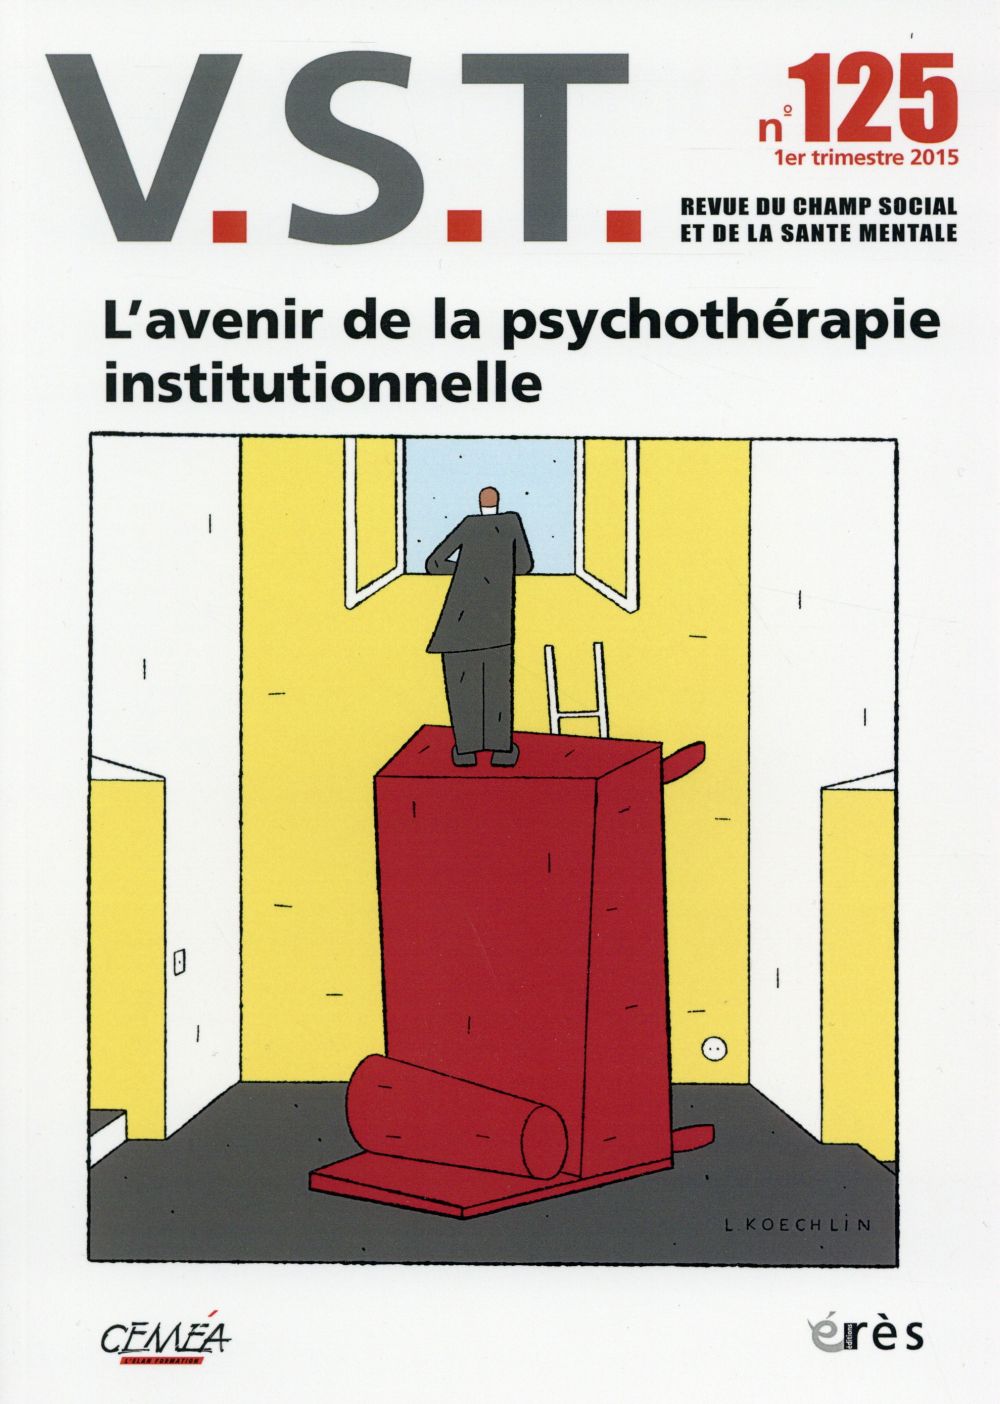 VST 125 - L'AVENIR DE LA PSYCHOTHERAPIE INSTITUTIONNELLE